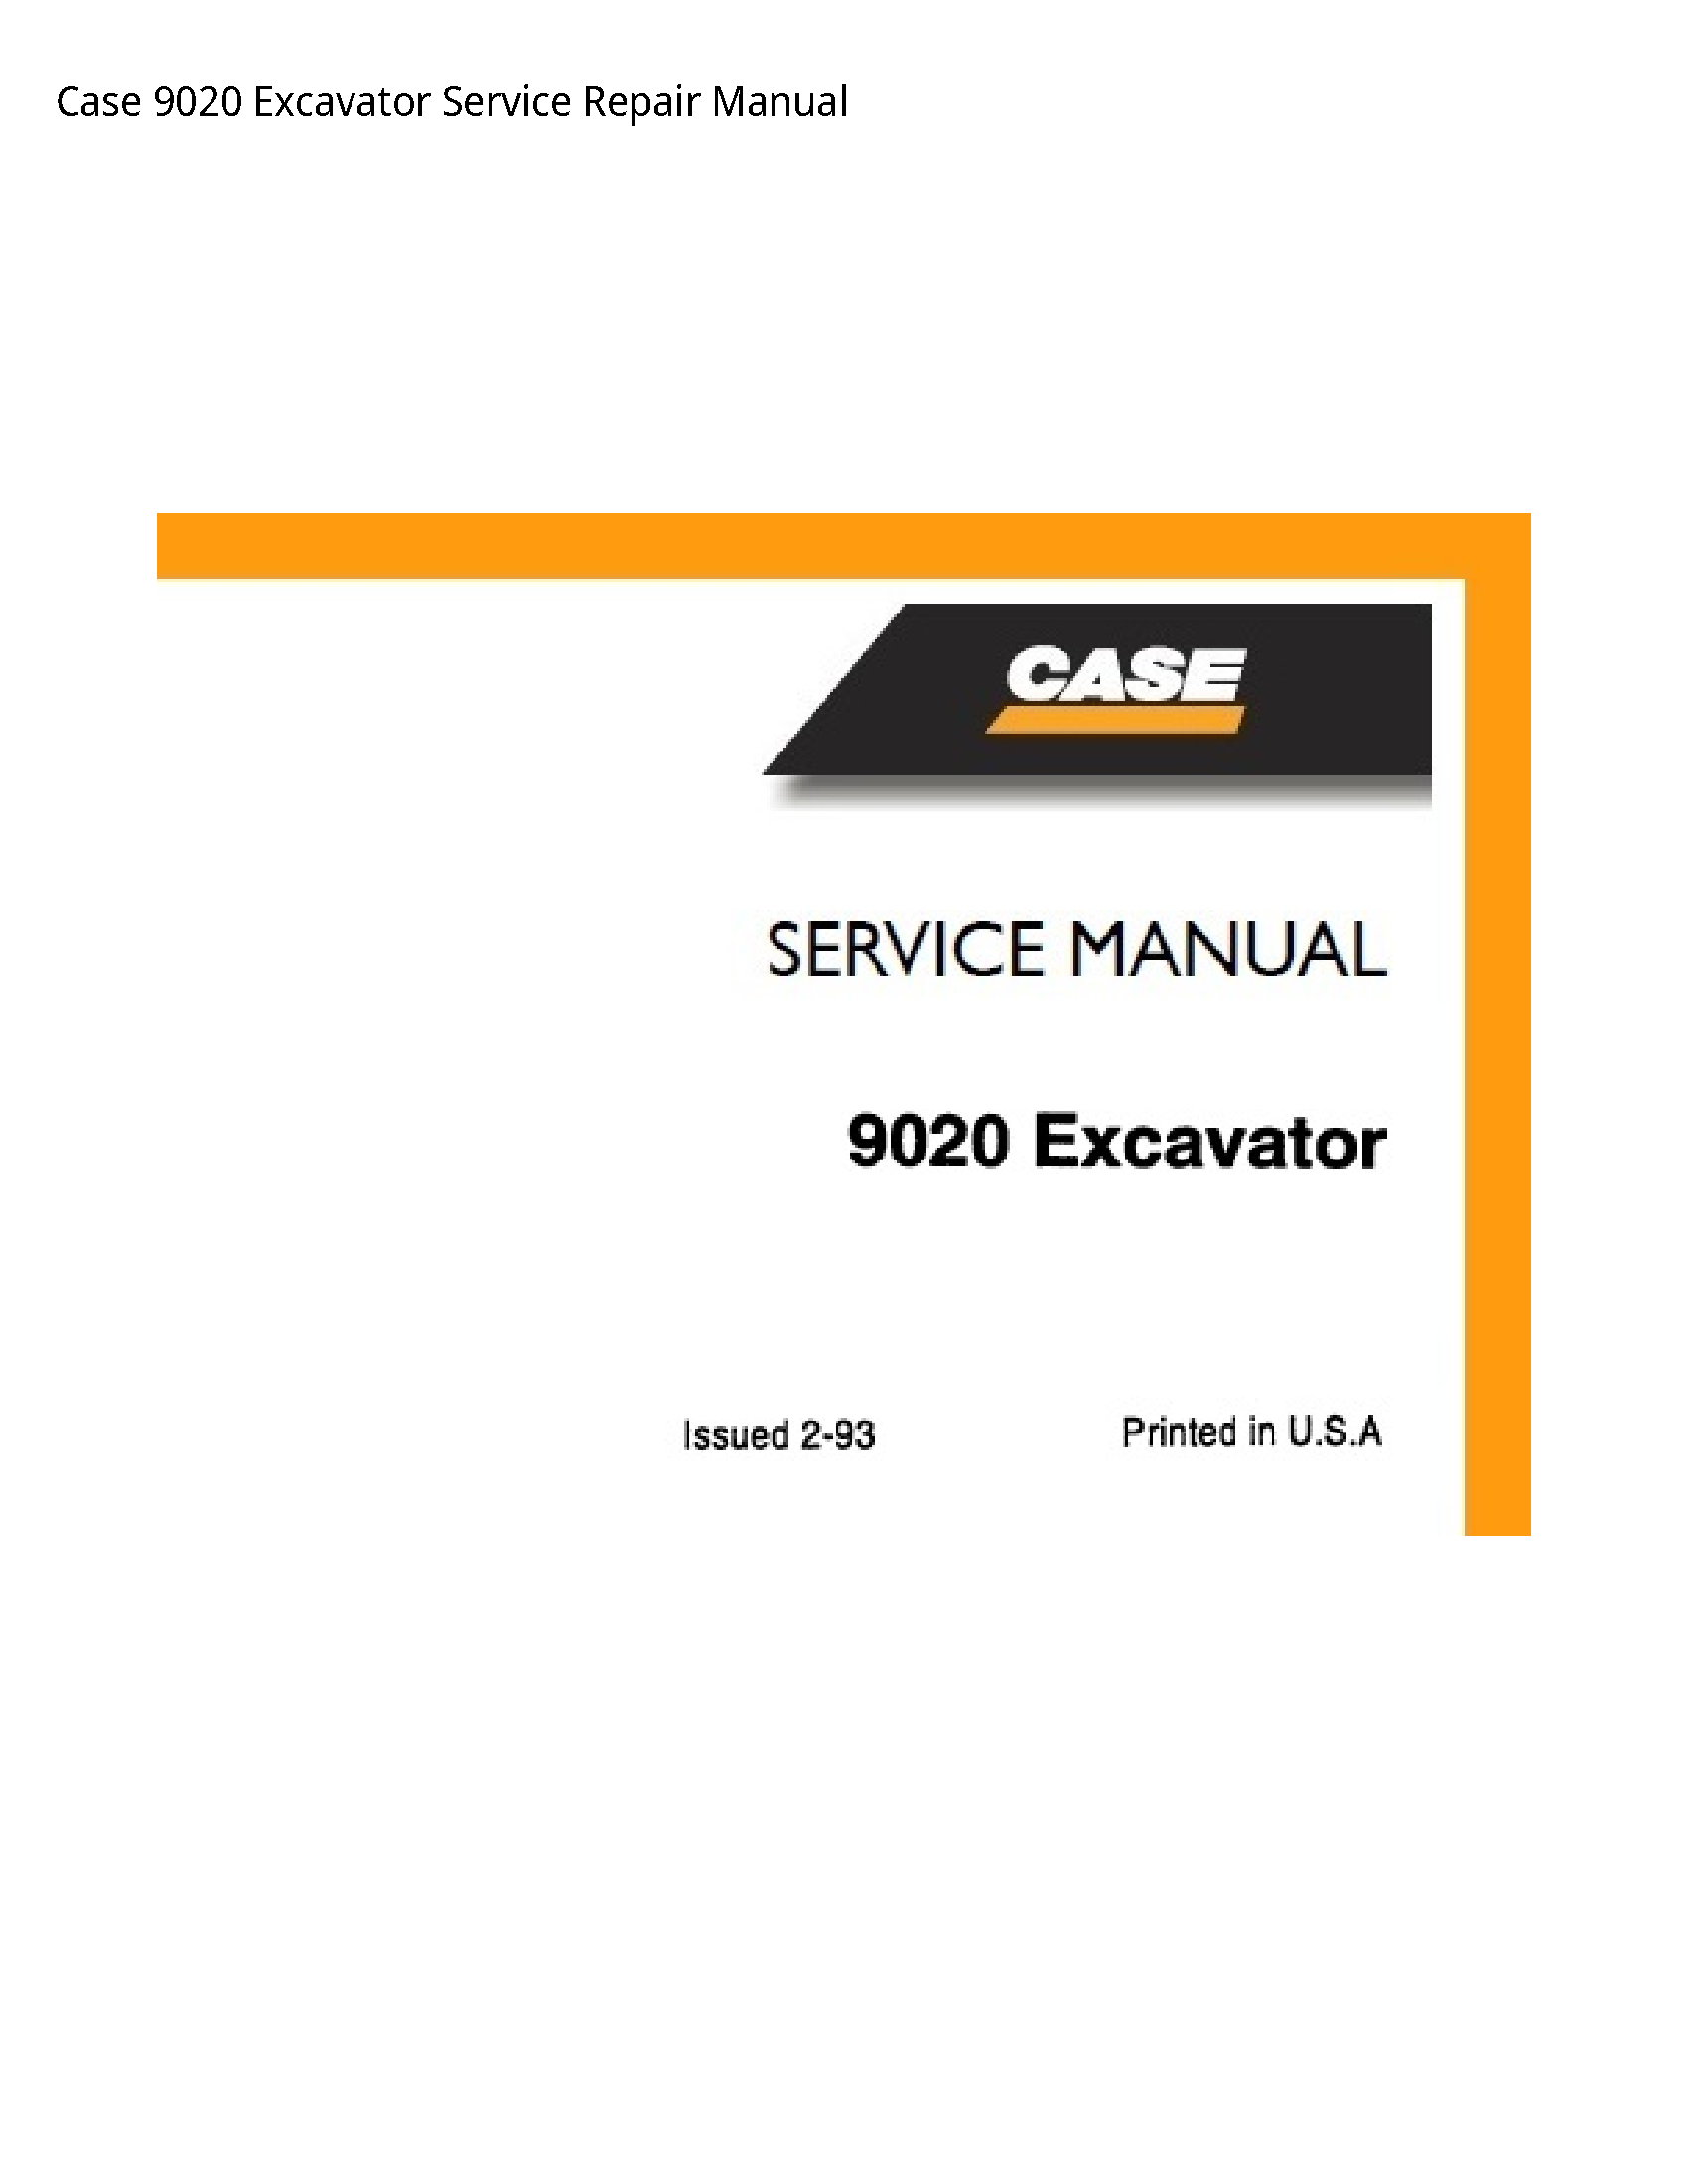 Case/Case IH 9020 Excavator manual